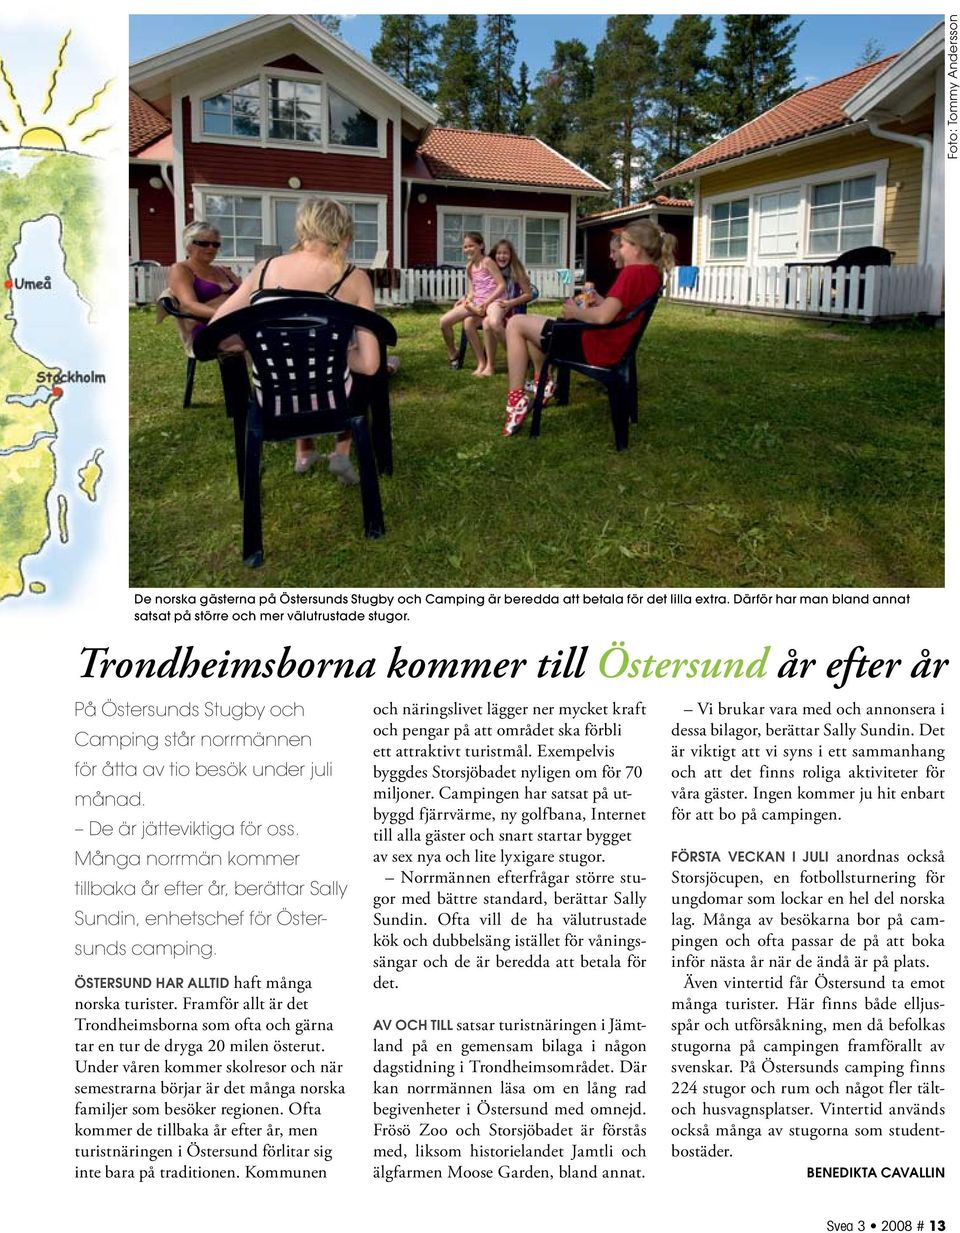 Många norrmän kommer tillbaka år efter år, berättar Sally Sundin, enhetschef för Östersunds camping. Östersund har alltid haft många norska turister.